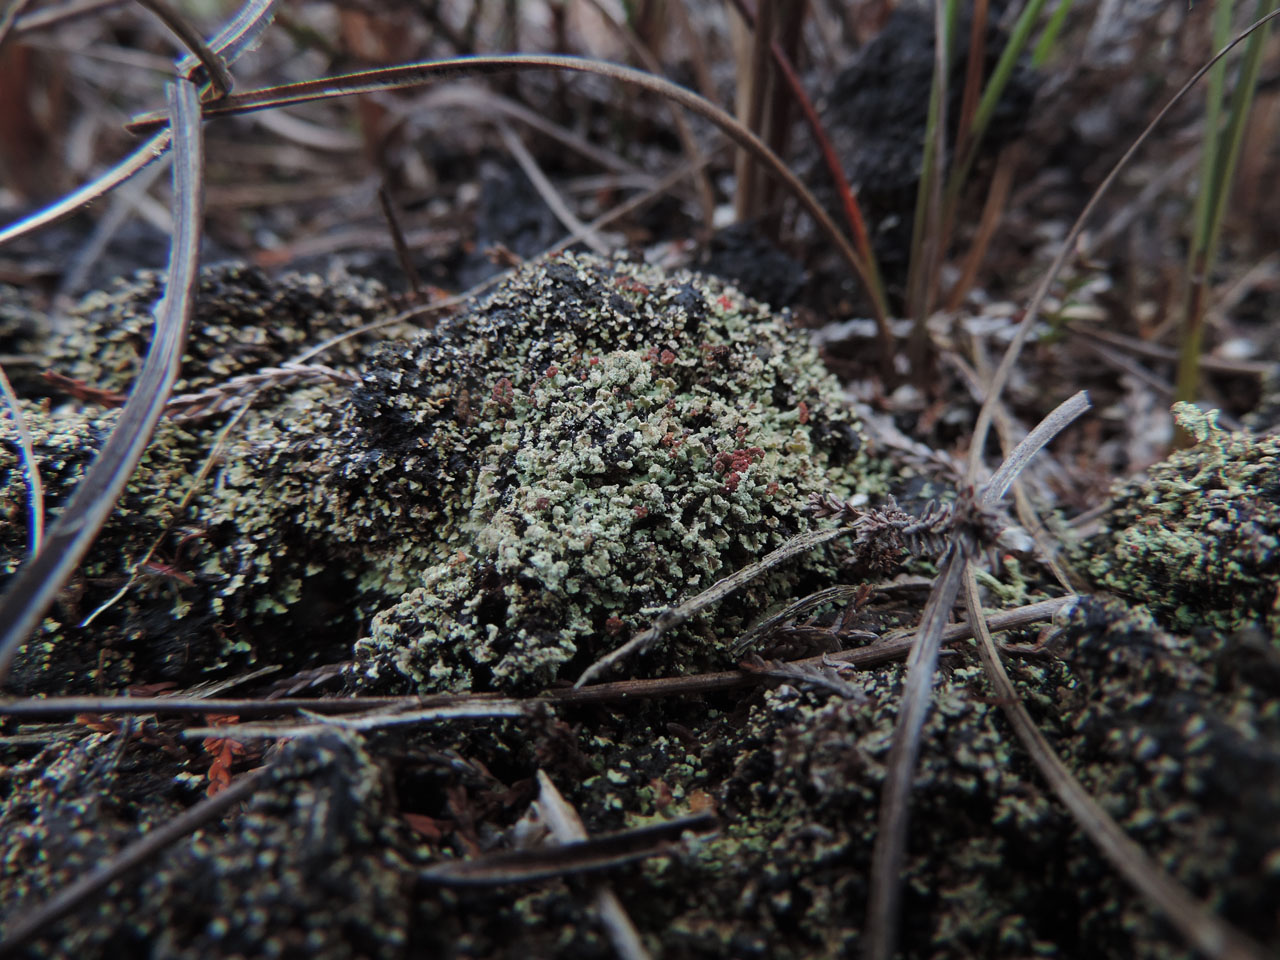 Cladonia incrassata habitat, base of peat cutting, raised bog